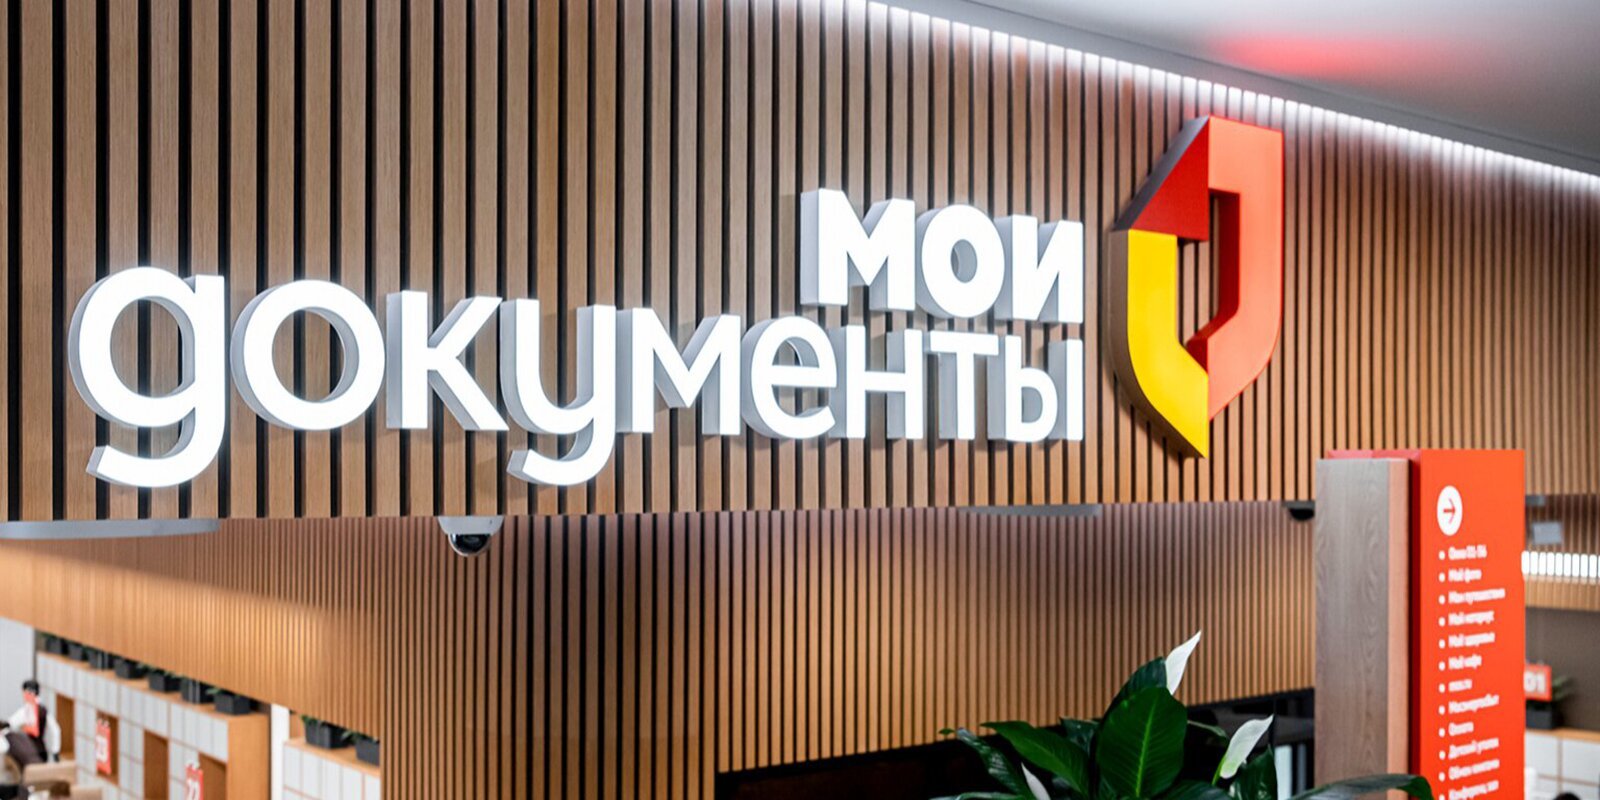 Услуги в московских офисах «Мои документы» теперь не зависят от места регистрации